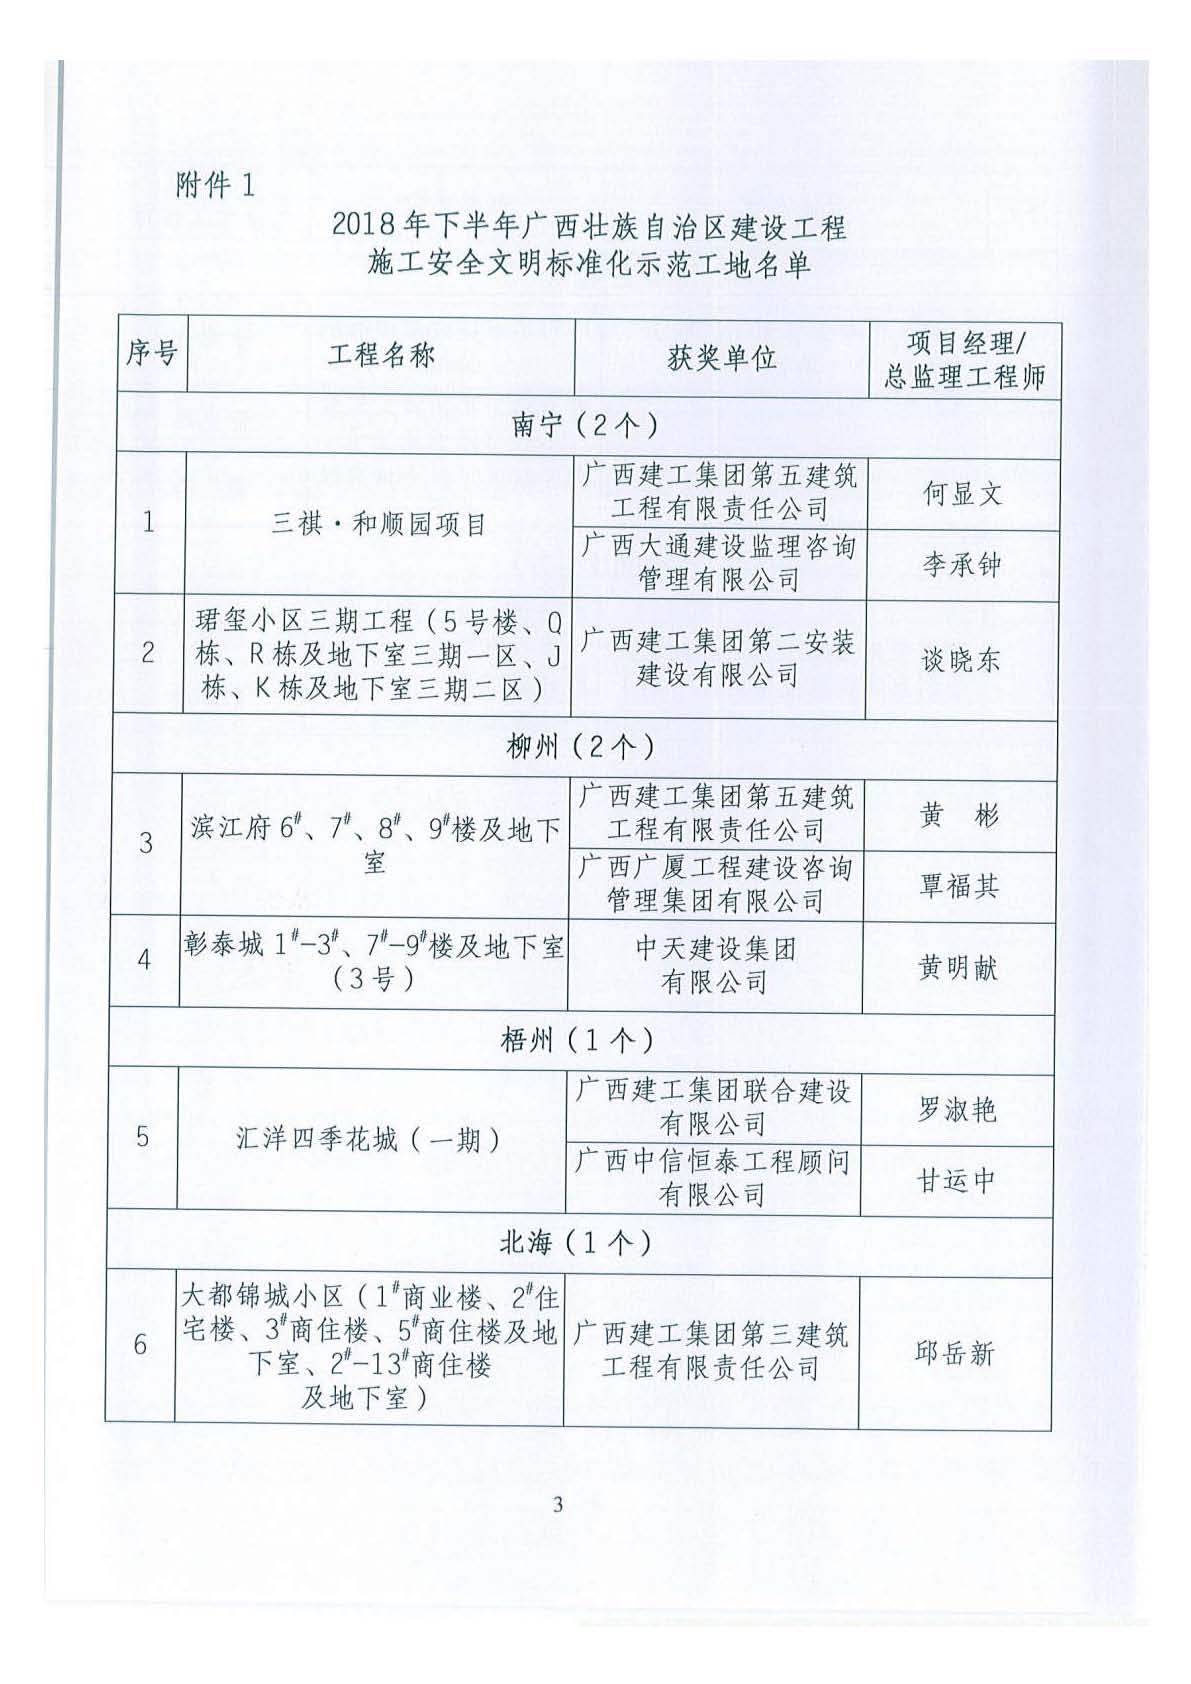 关于公布2018年下半年广西壮族自治区建设工程施工安全文明标准化工地的通知 _页面_03.jpg